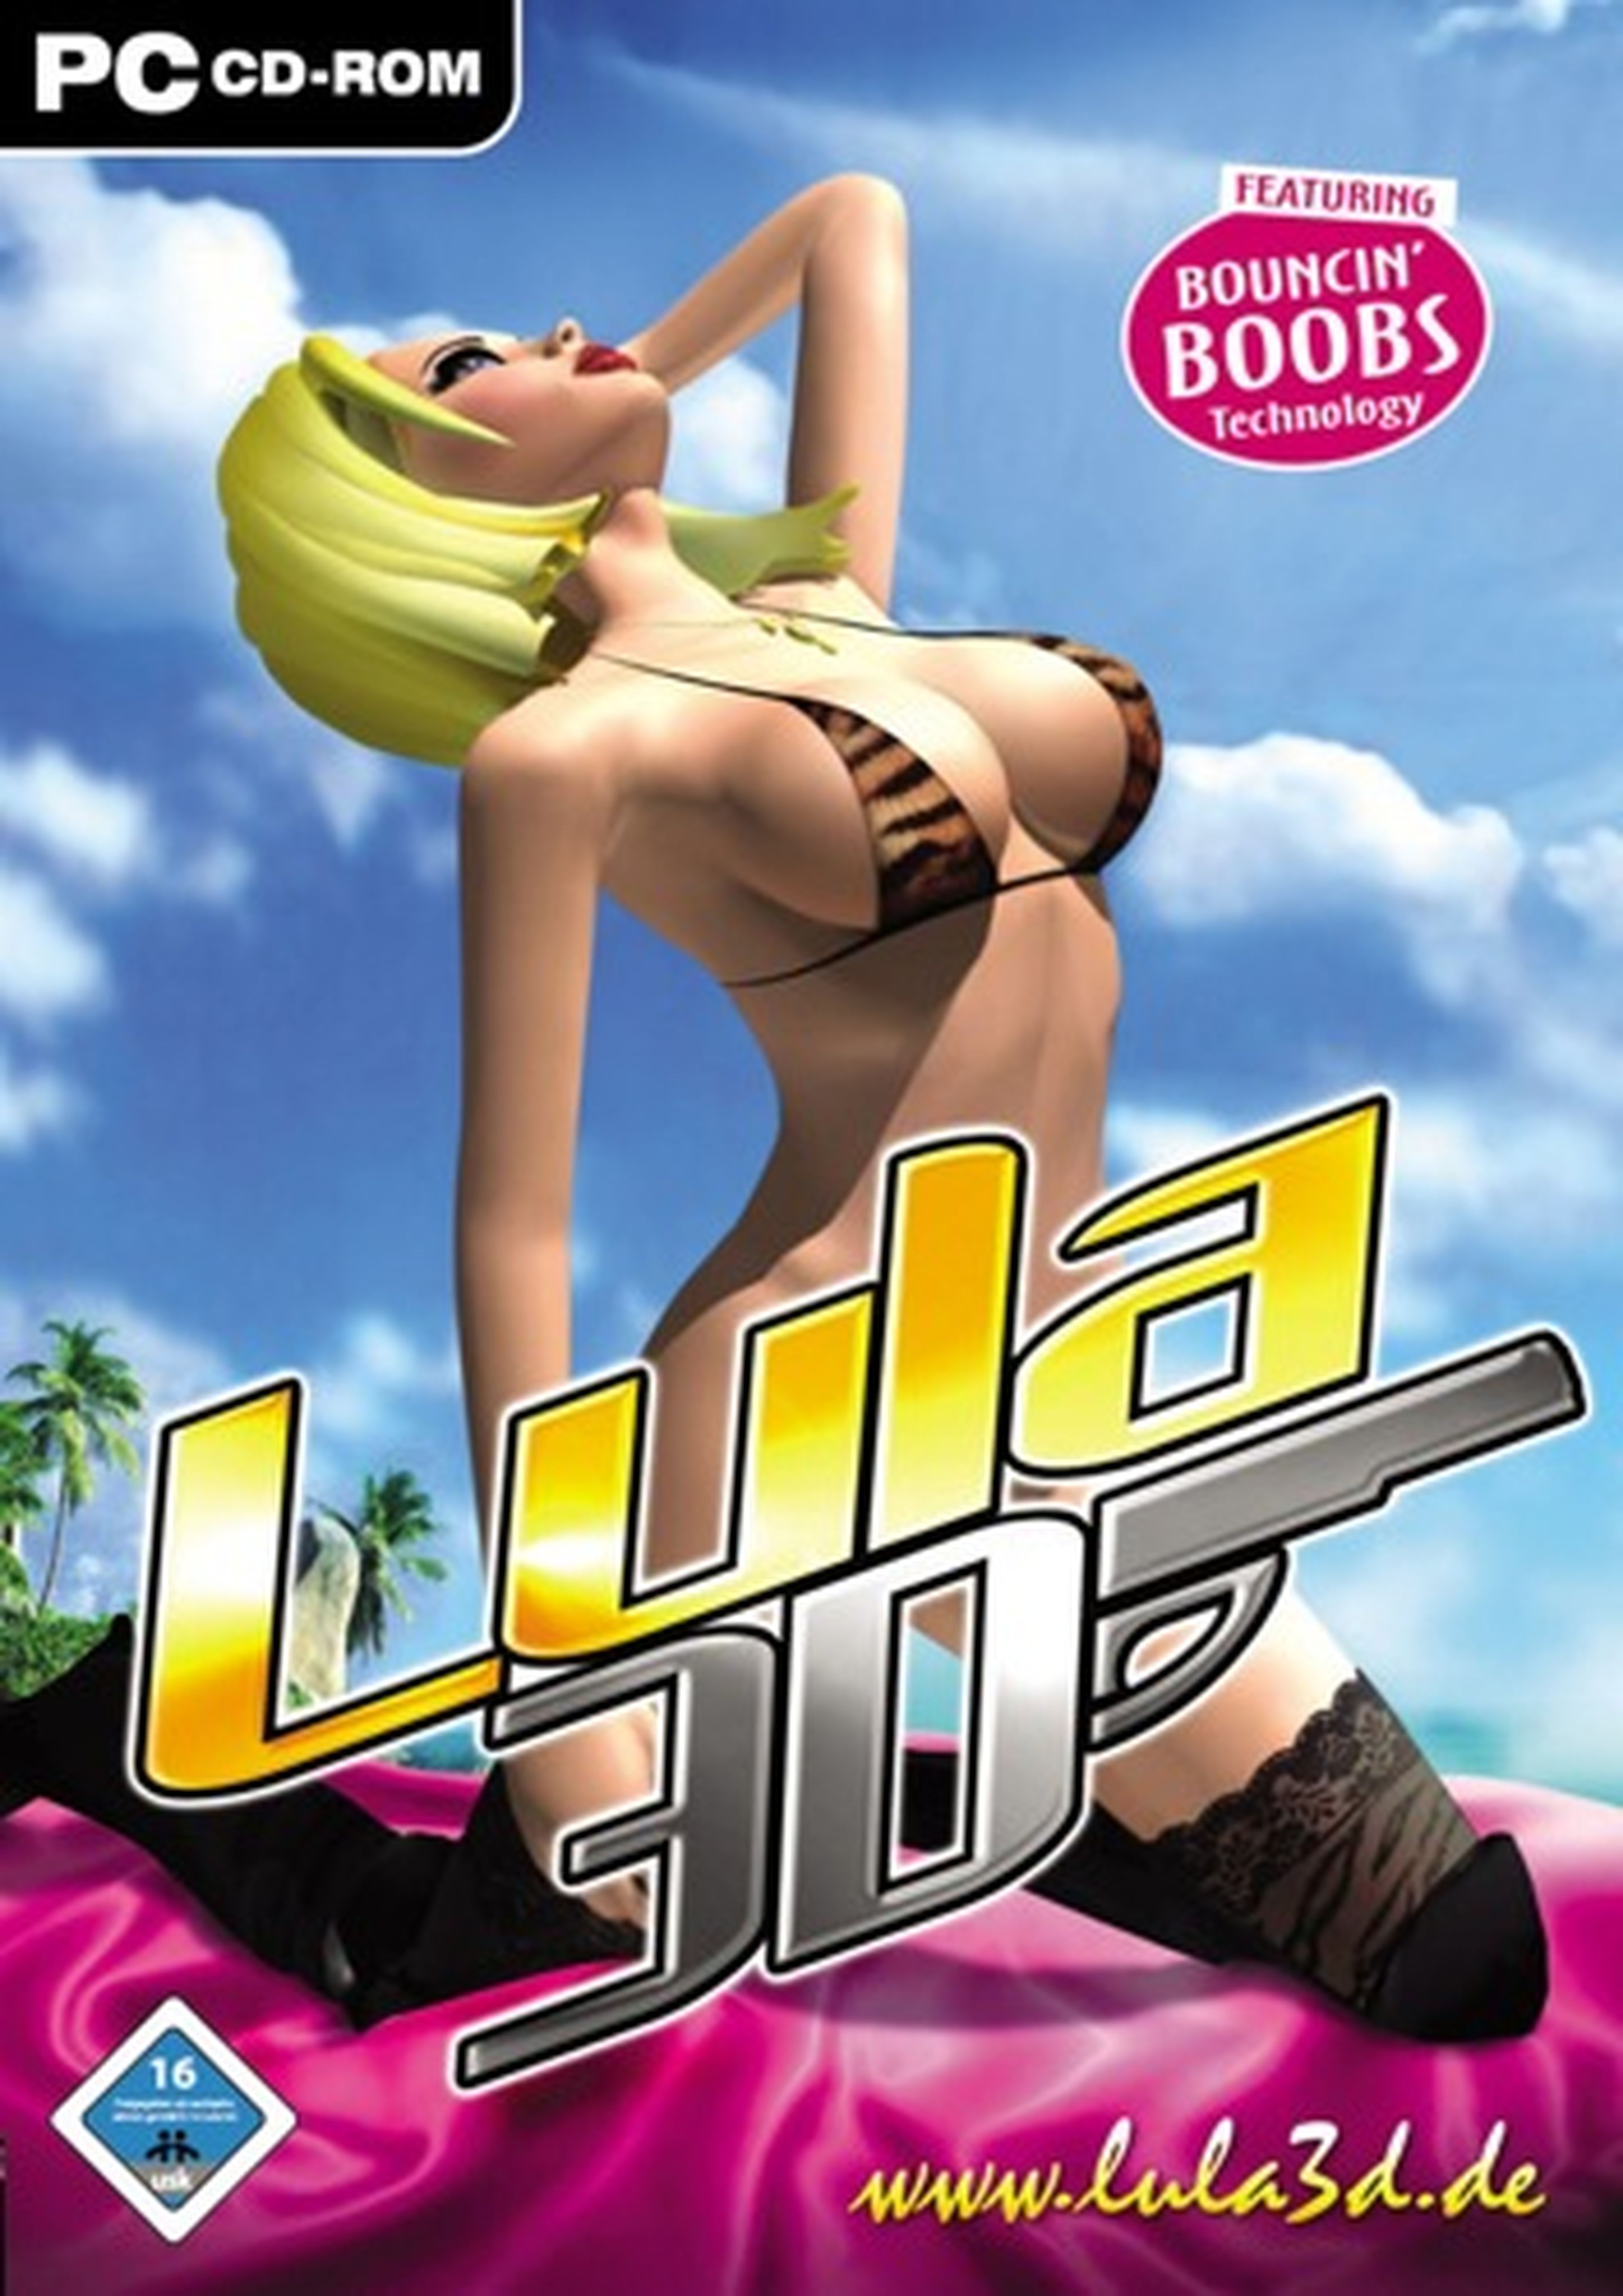 Загрузить игры 18. Лула 3d. Lula 3d игра. Игры на ПК для девушек. Взрослые игры 18 на андроид.